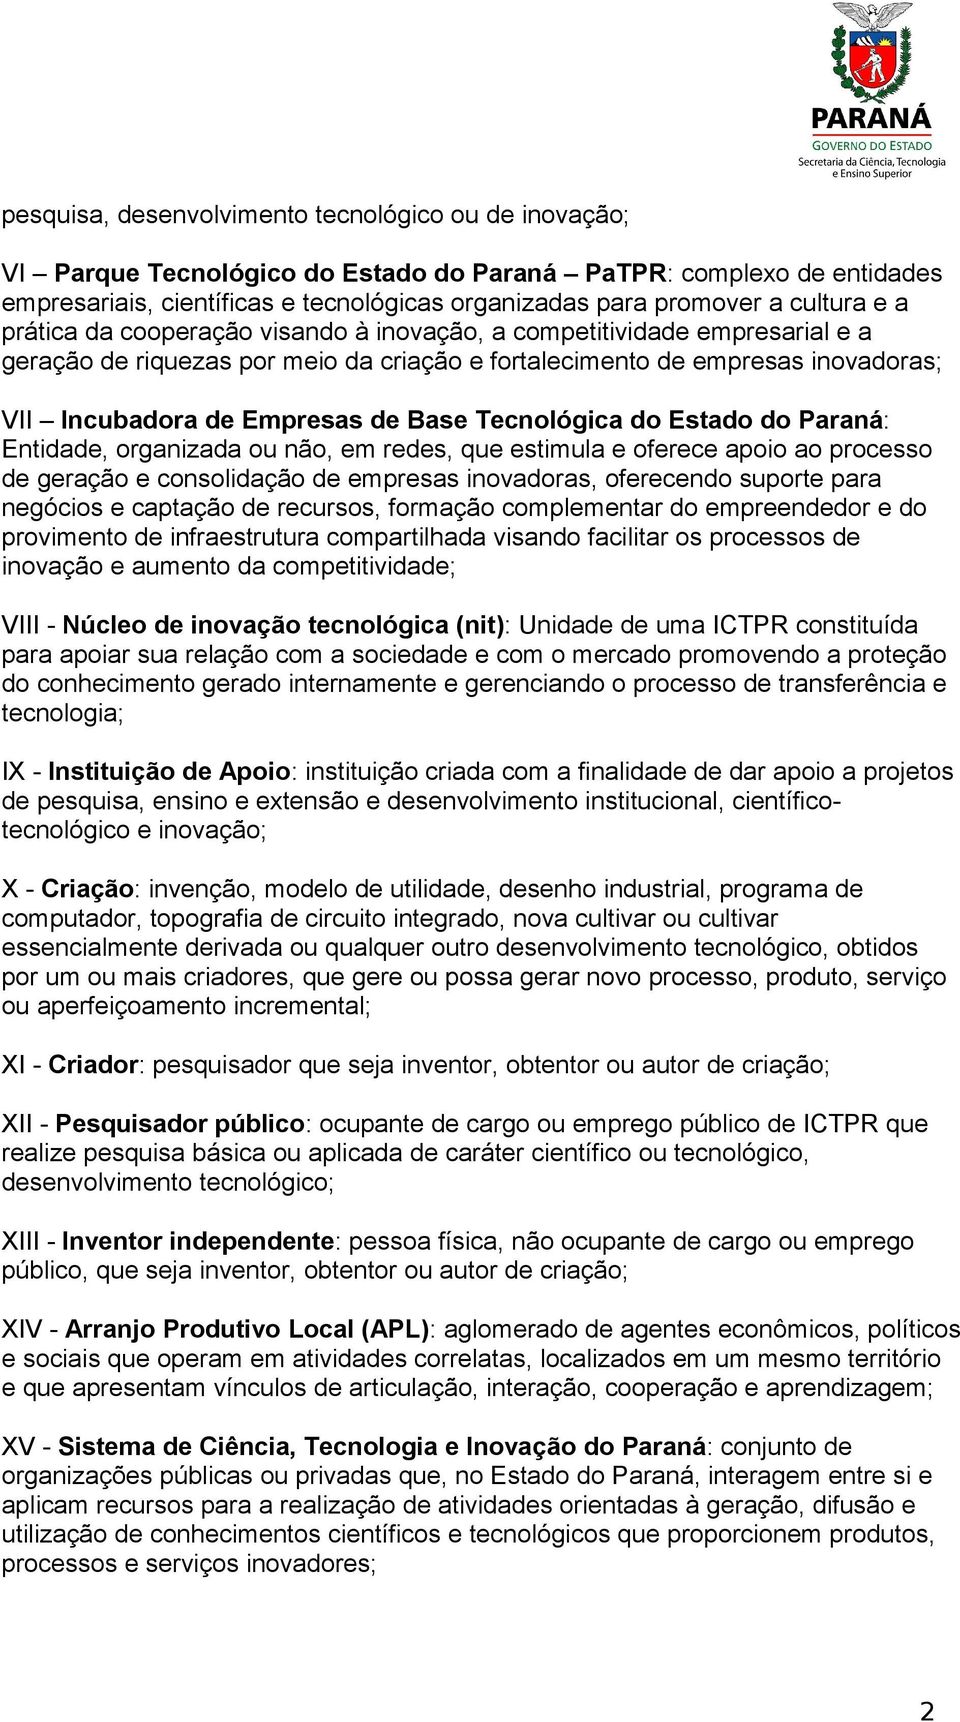 Base Tecnológica do Estado do Paraná: Entidade, organizada ou não, em redes, que estimula e oferece apoio ao processo de geração e consolidação de empresas inovadoras, oferecendo suporte para